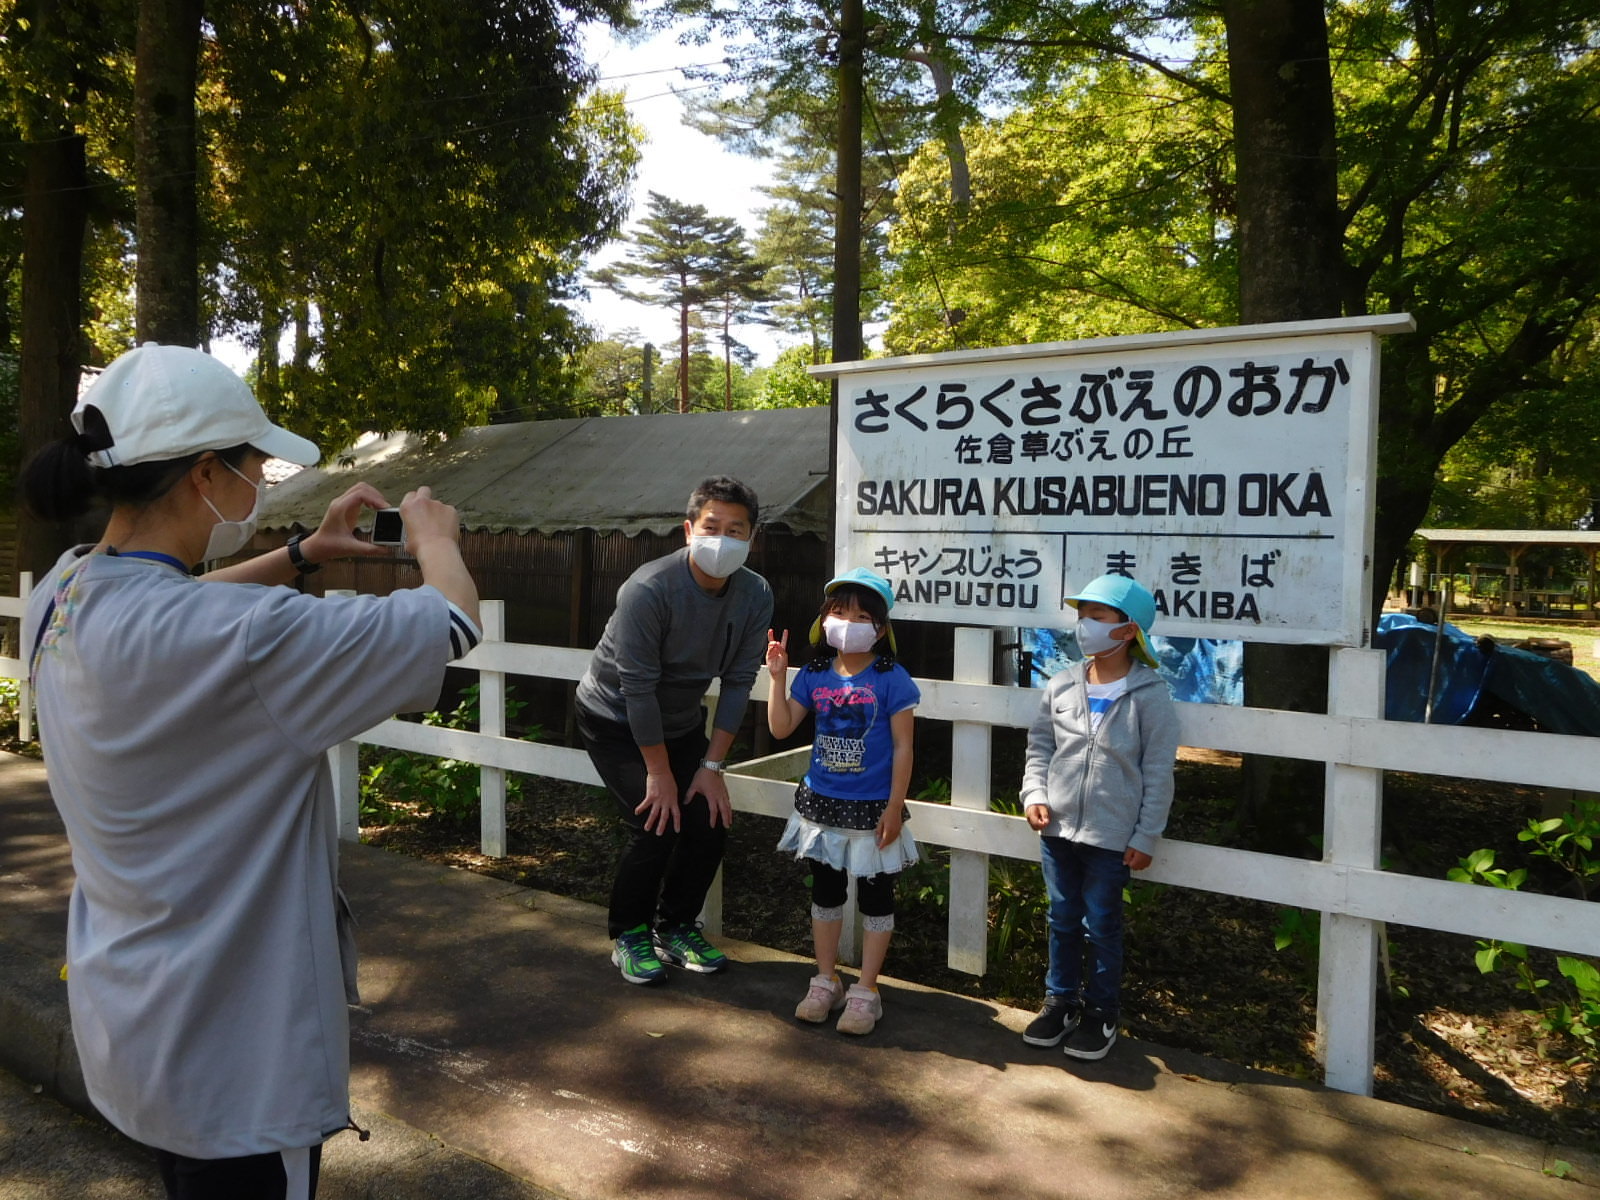 「さくらくさぶえのおか」と書かれた駅名の看板の前で記念撮影をする子供たちと先生の写真